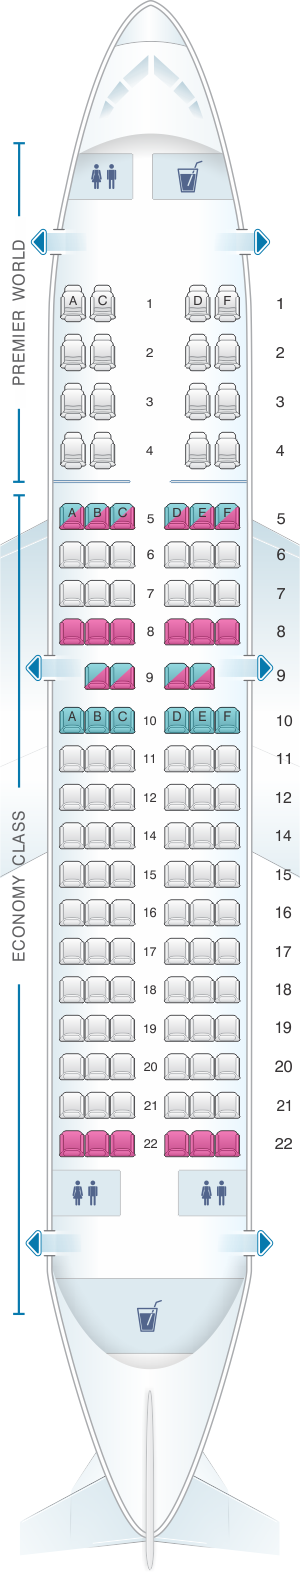 Seat map for Kenya Airways Boeing B737 300